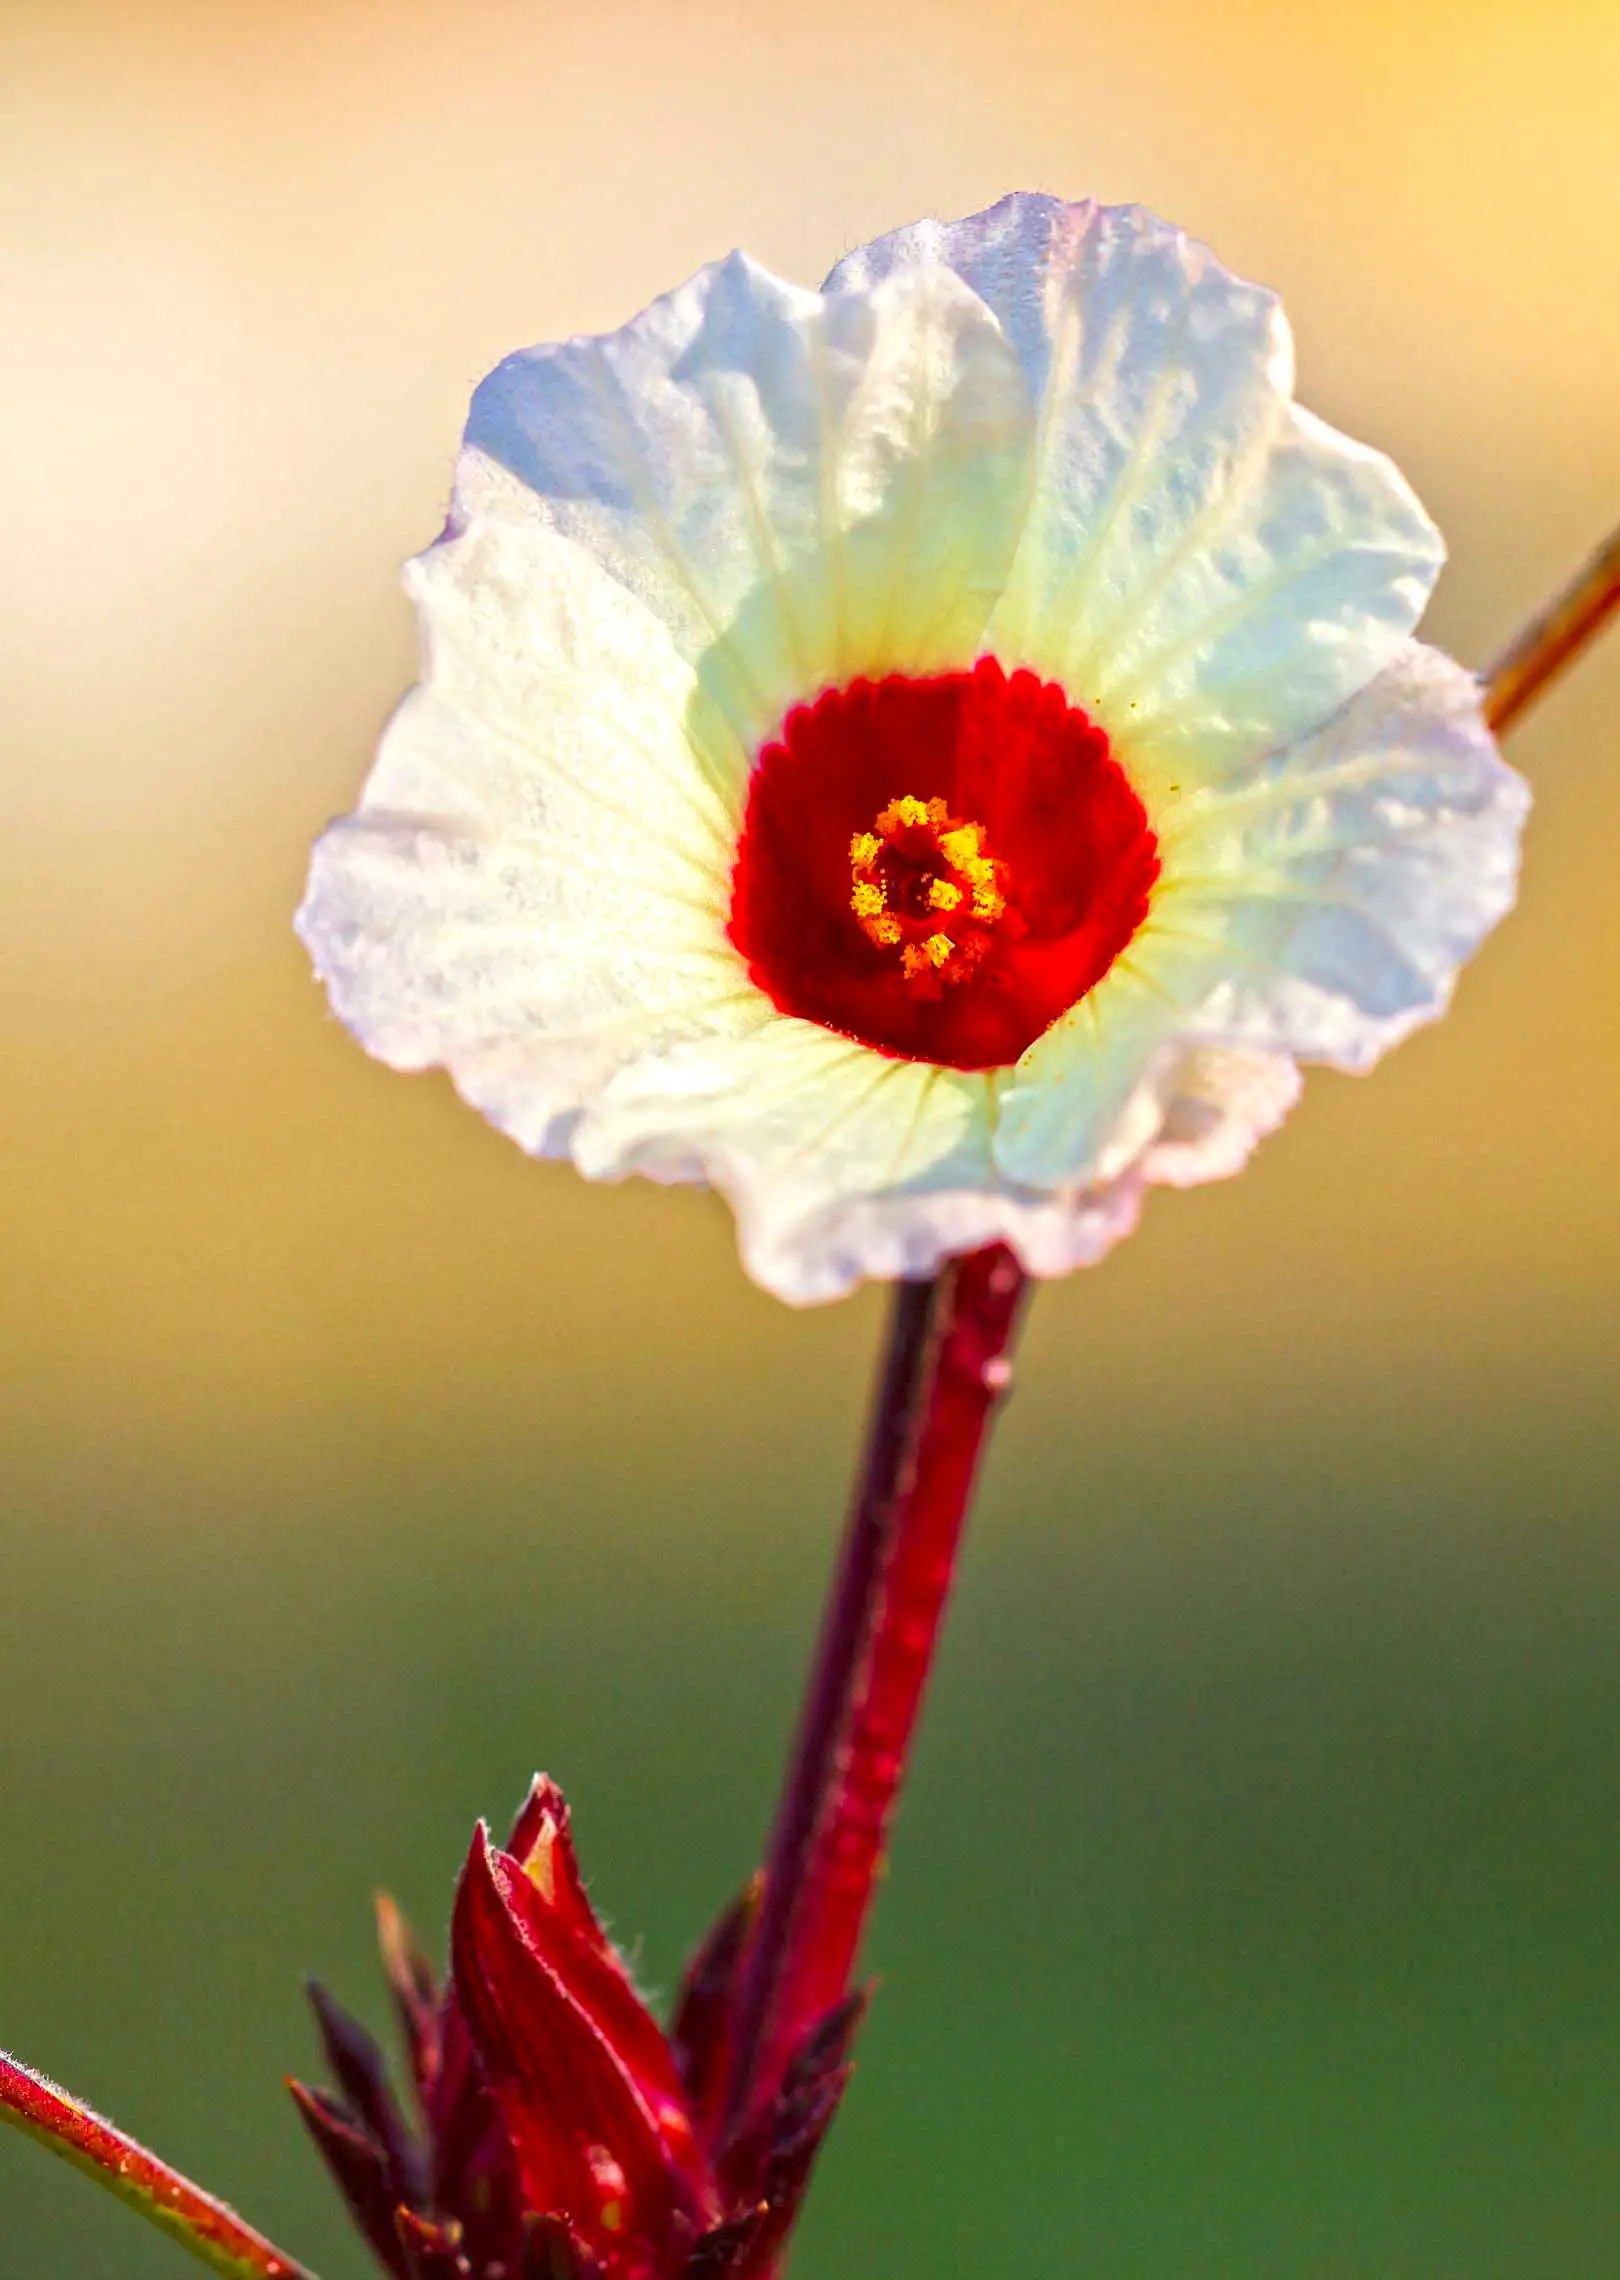 Red okra flower